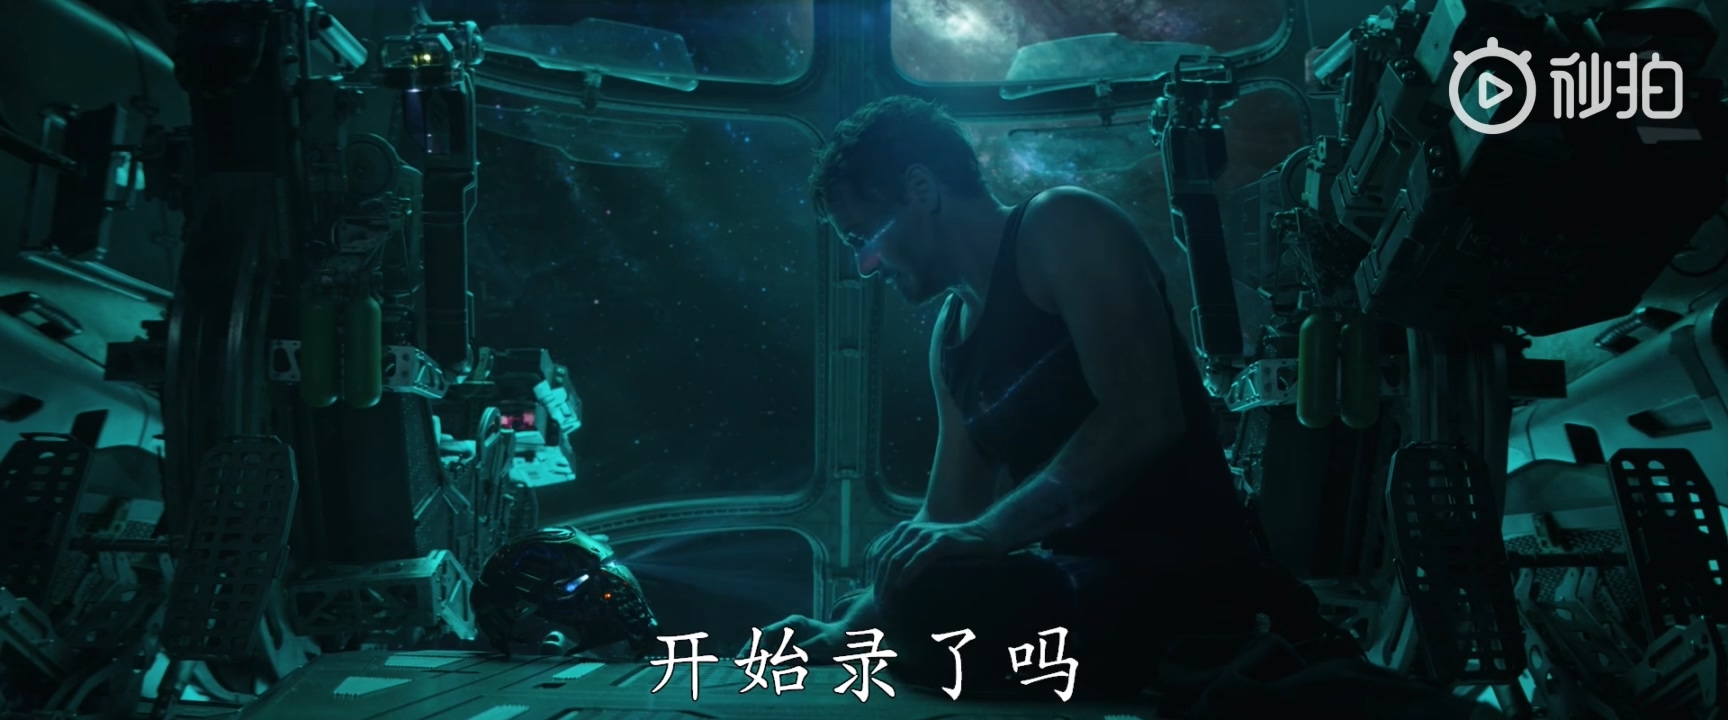 《复仇者联盟4》中文预告首曝 定名“终局之战”